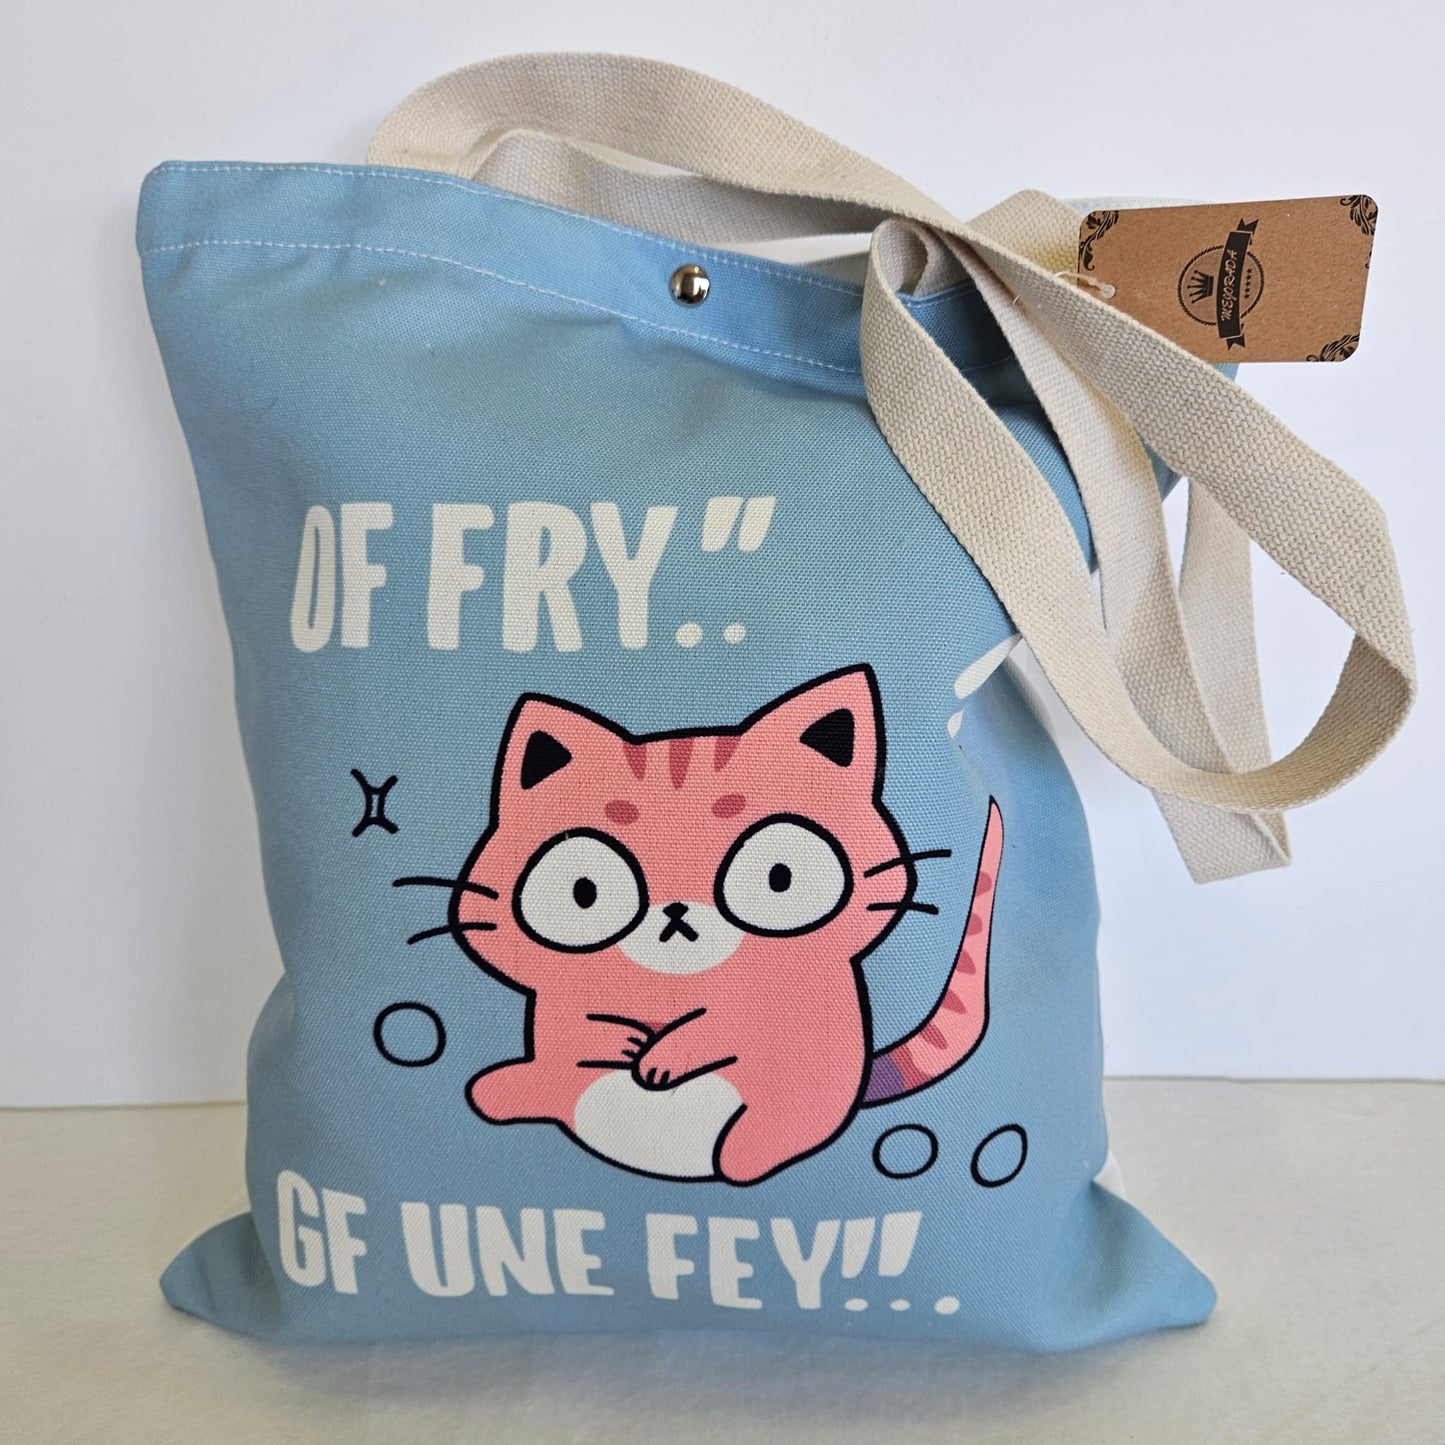 Bolsa tote bag de tela estampado gatito con frase "OF FRY... GF UNE FEY..."